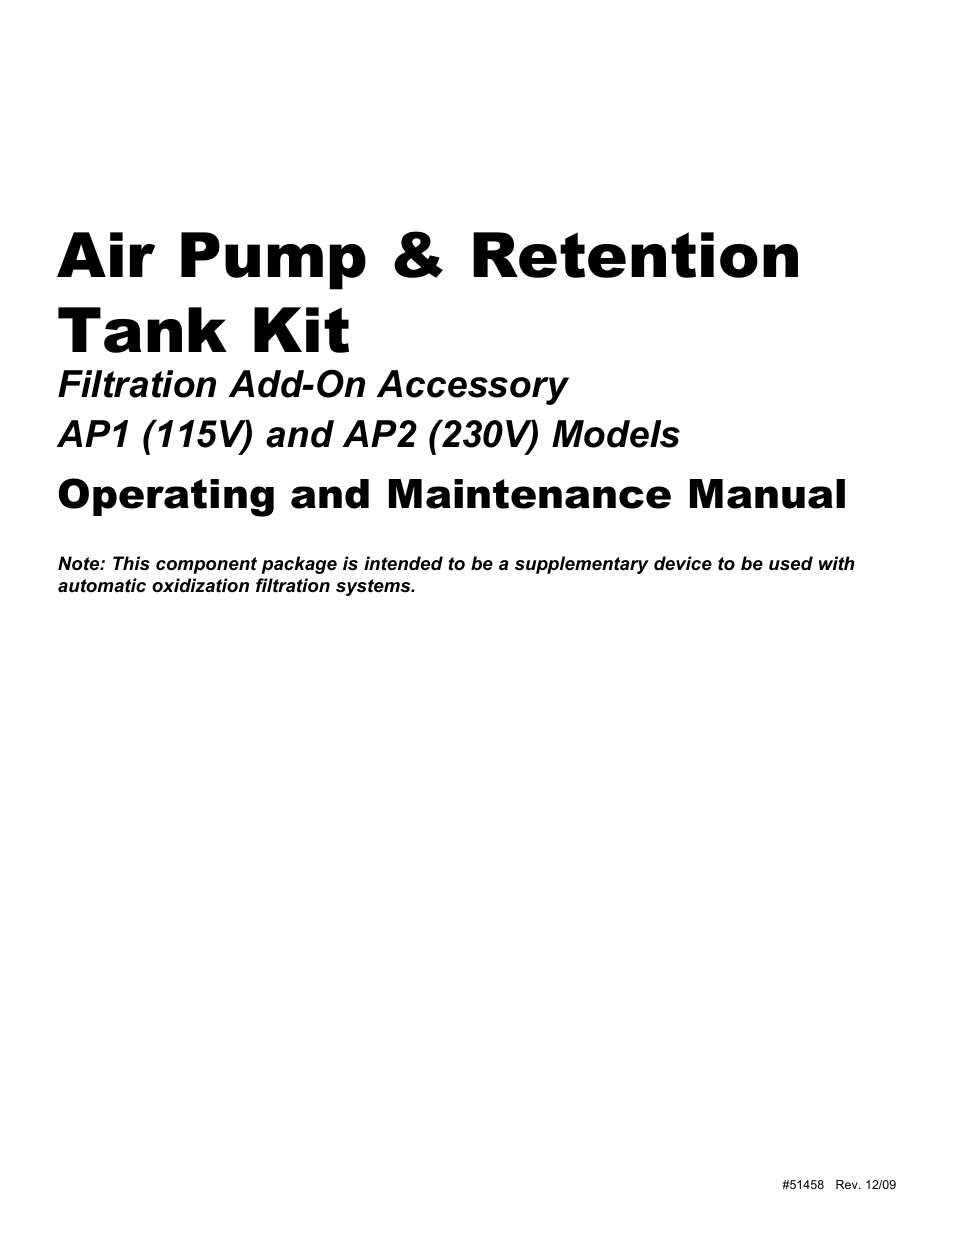 AP1 (115V) Air Pump & Retention Tank Kit